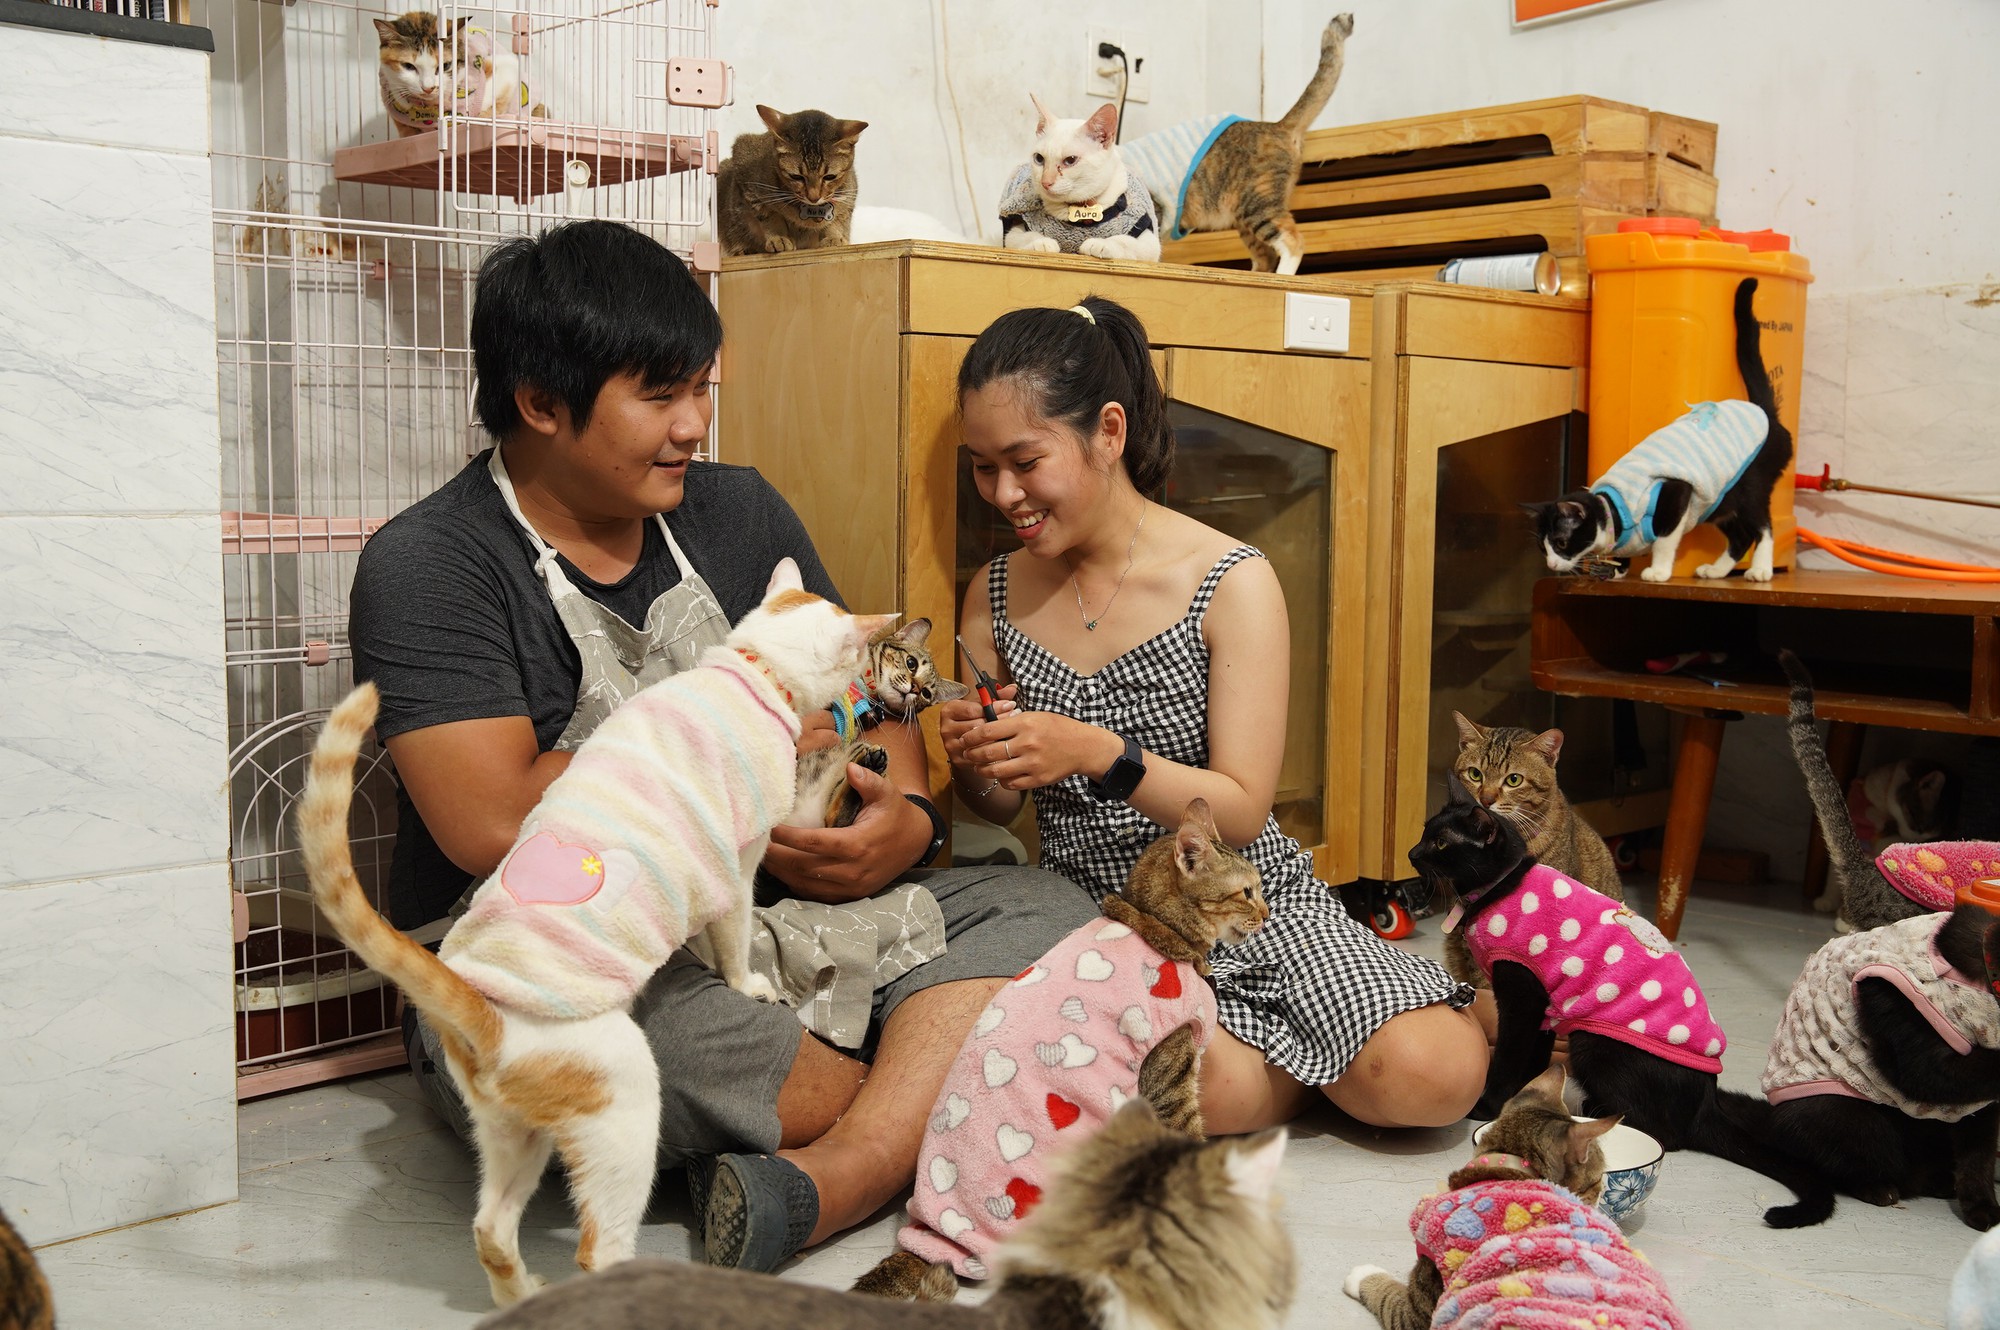 Đôi bạn trẻ dành hết số tiền cưới để thành lập trạm cứu hộ cho những chú mèo hoang - Ảnh 1.